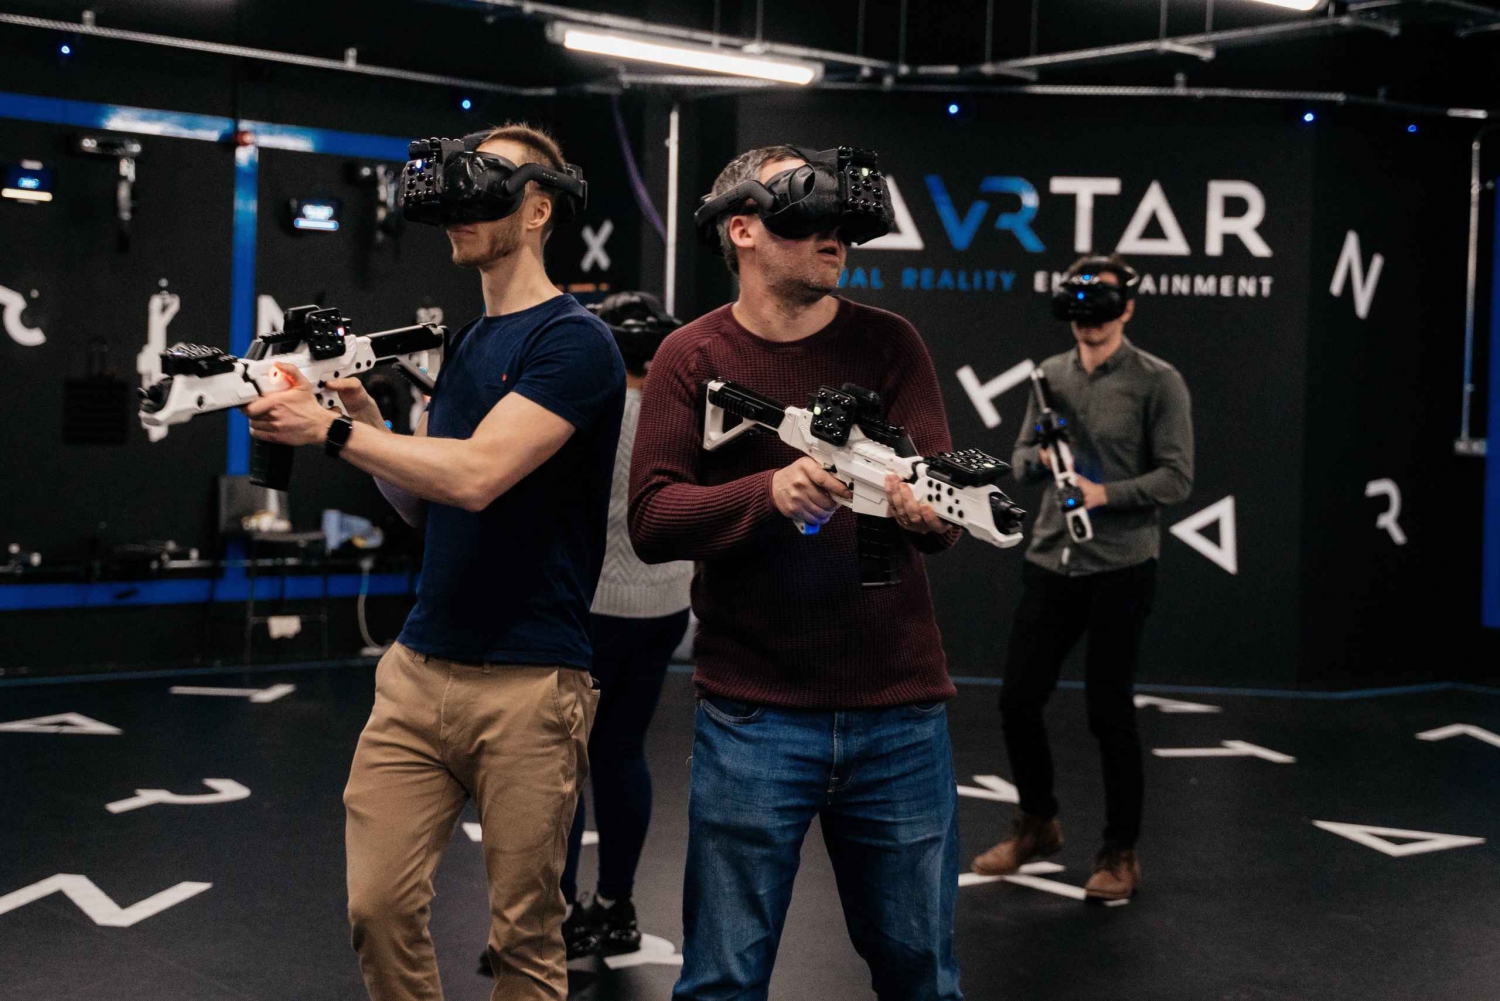 London: Storbritannias eneste 60-minutters VR-opplevelse med fri ferdsel i luften